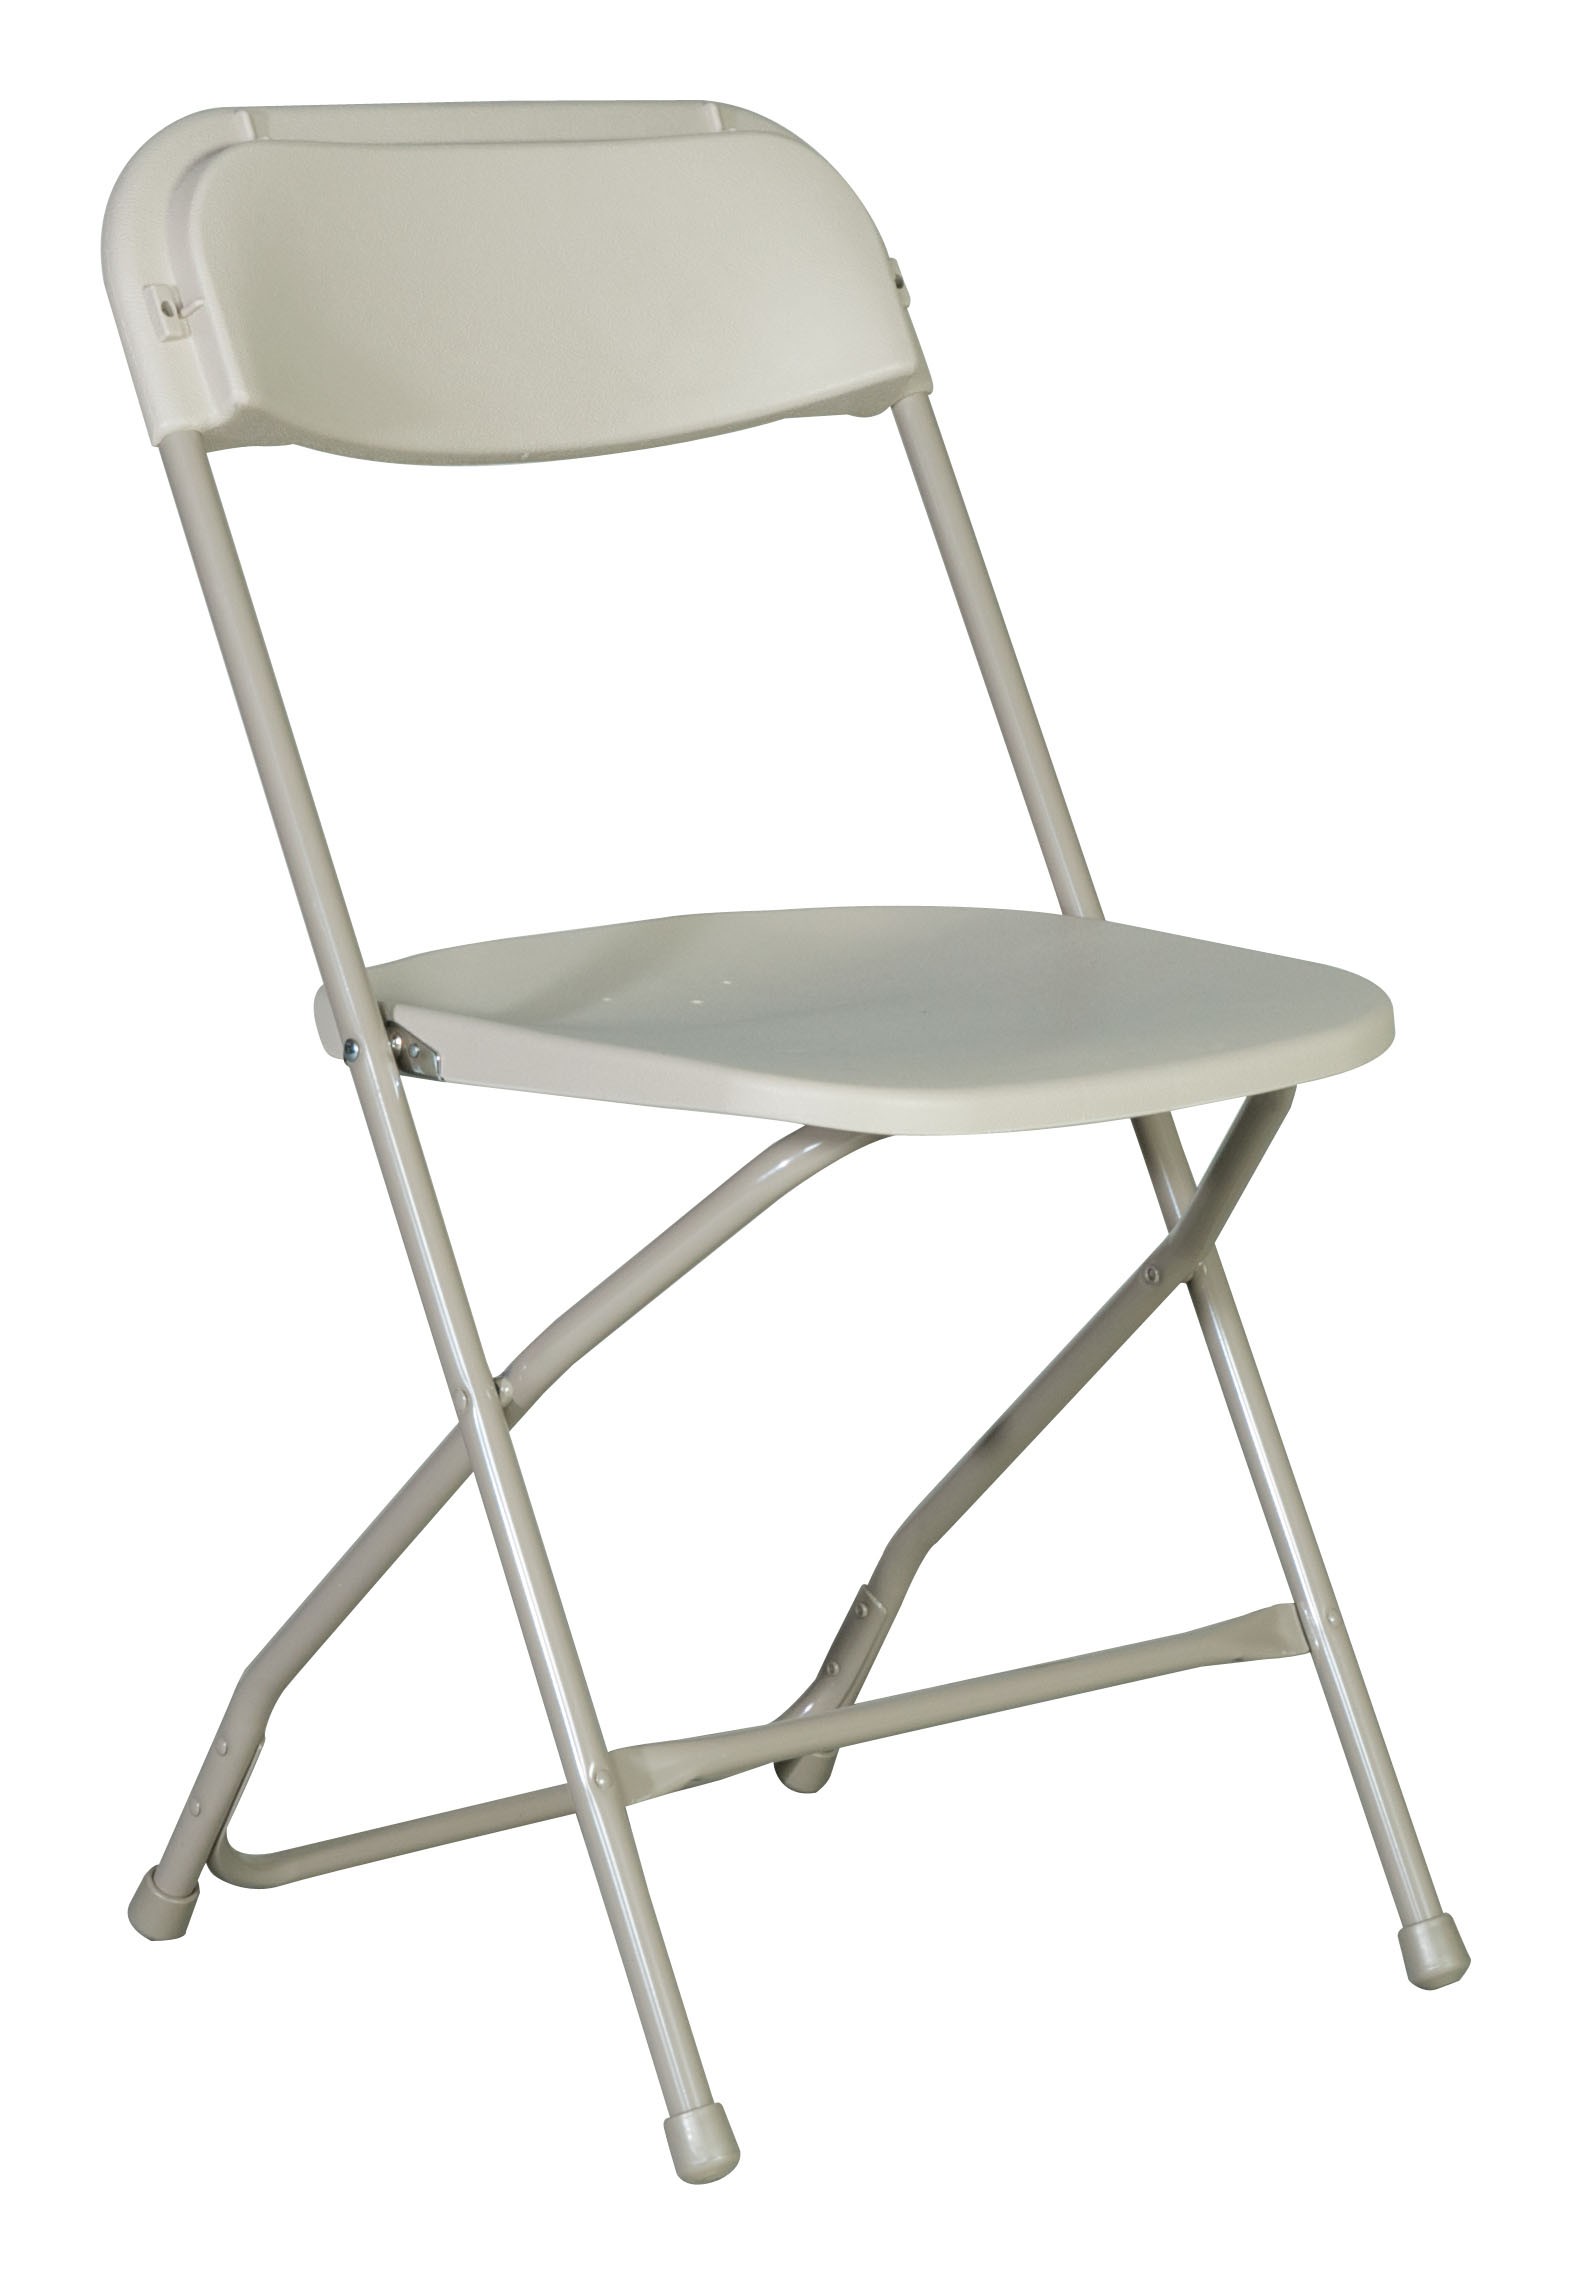 Cool Rhino-Series™ Plastic Folding Chair - Bone #2167 plastic folding chairs